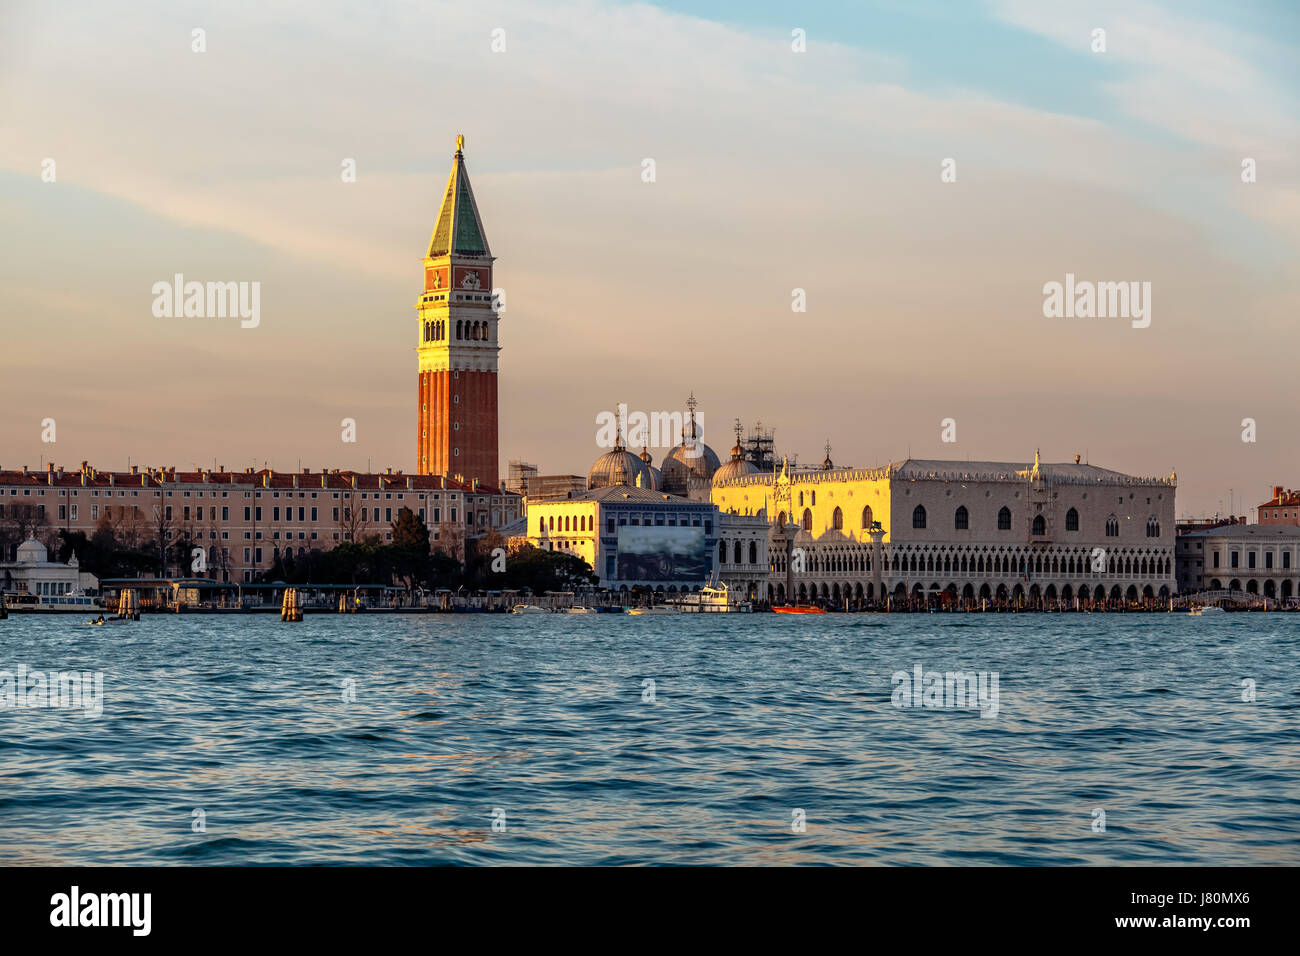 Ansicht des Dogen Palast, Campanella und Kathedrale von San Marco aus dem Canal Grande, Venedig, Italien Stockfoto